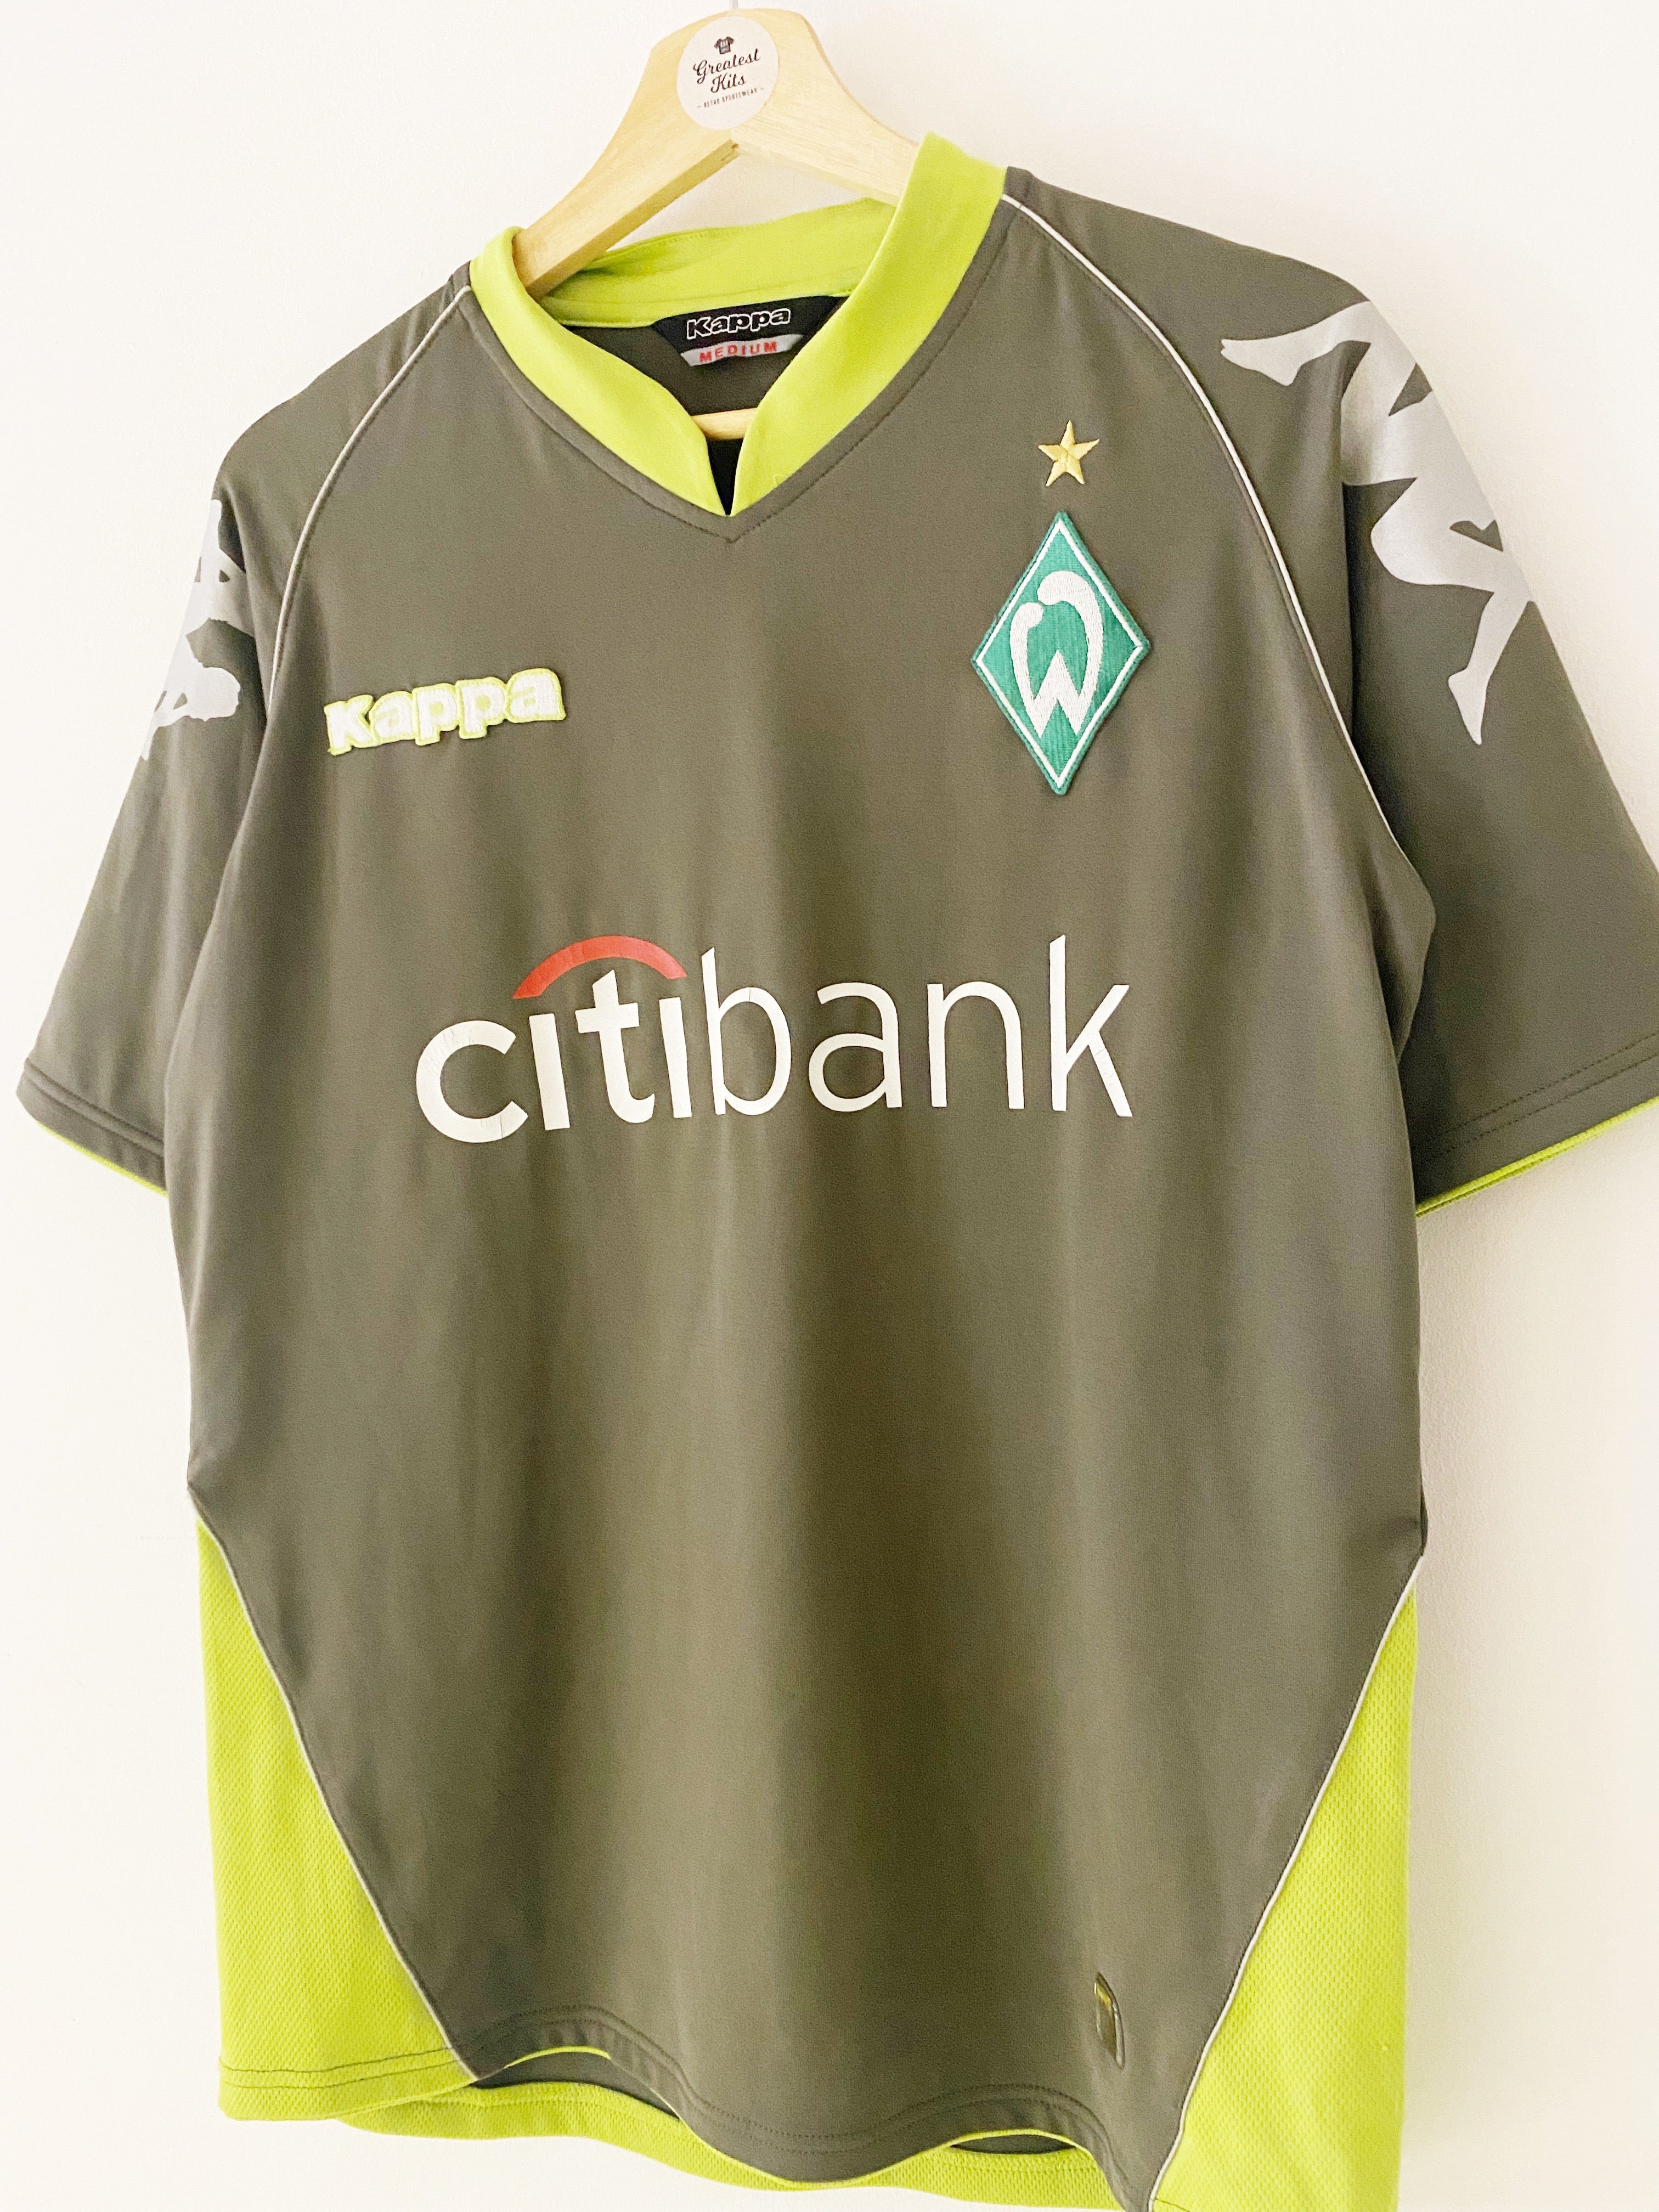 2007/08 Werder Bremen Away Shirt (M) 8.5/10